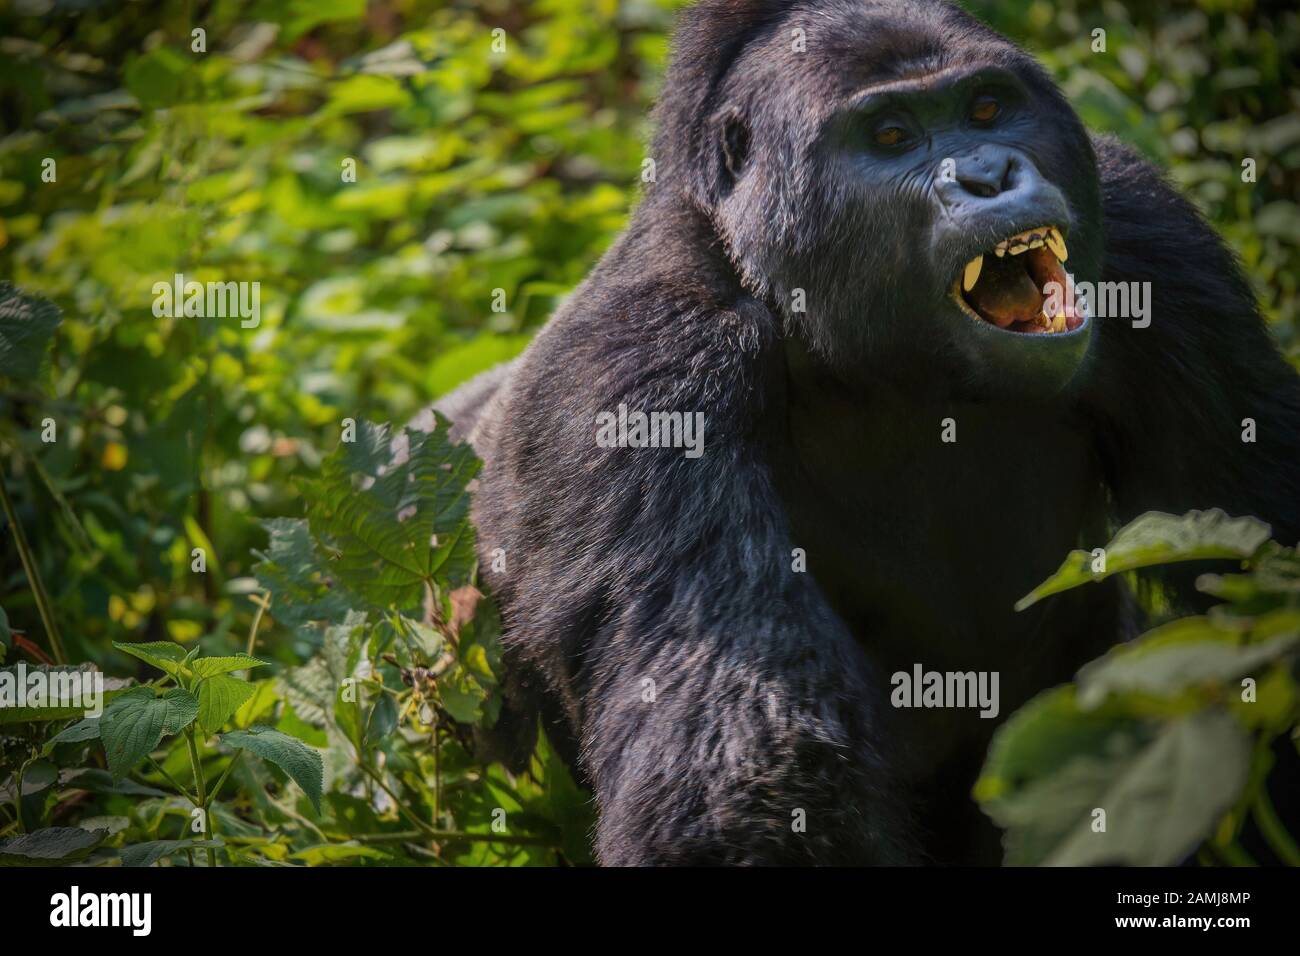 Une vue rare d'un gorille de montagne au dos argenté à travers la forêt de charge avec sa bouche ouverte et montrant les dents, voir de colère et d'agression. Banque D'Images